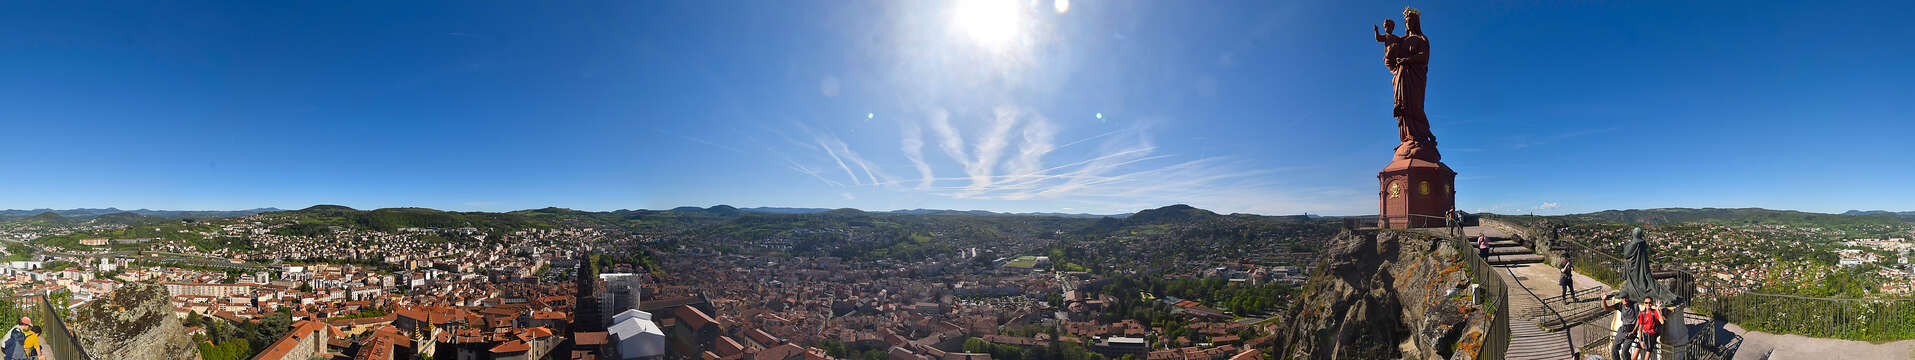 Webcam der Statue Notre-Dame de France 360° in Le Puy-en-Velay